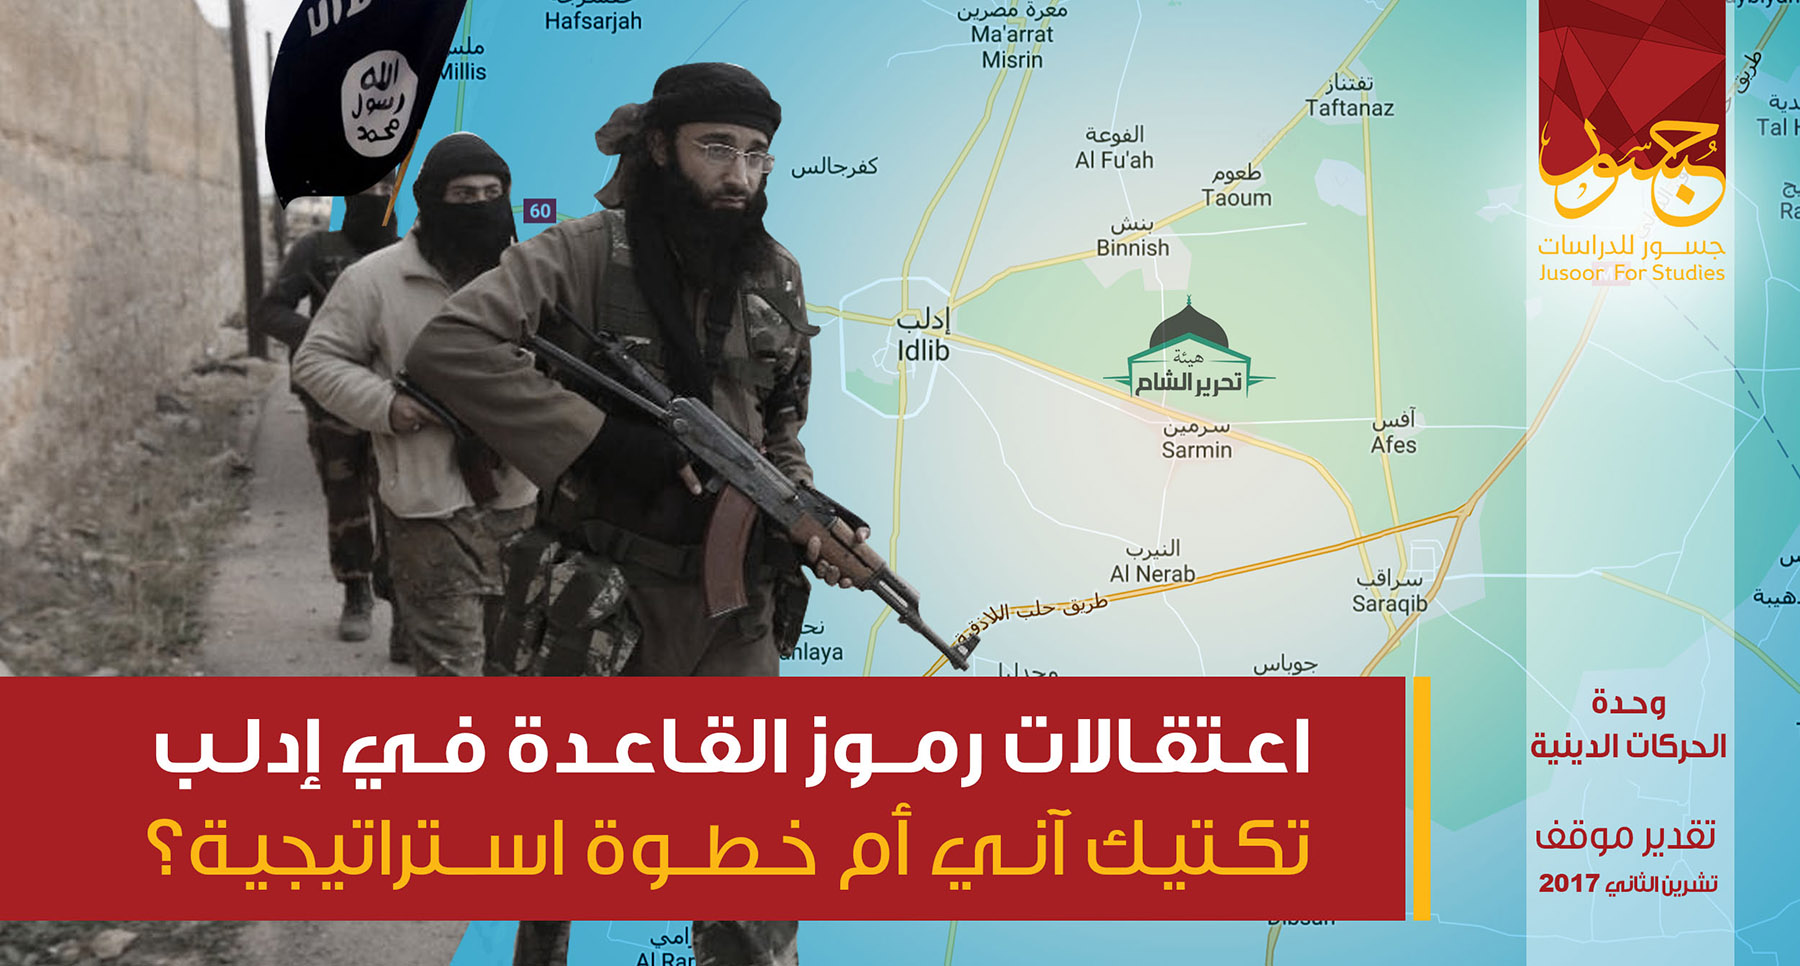 اعتقالات رموز القاعدة في إدلب ....تكتيك آني أم خطوة استراتيجية؟